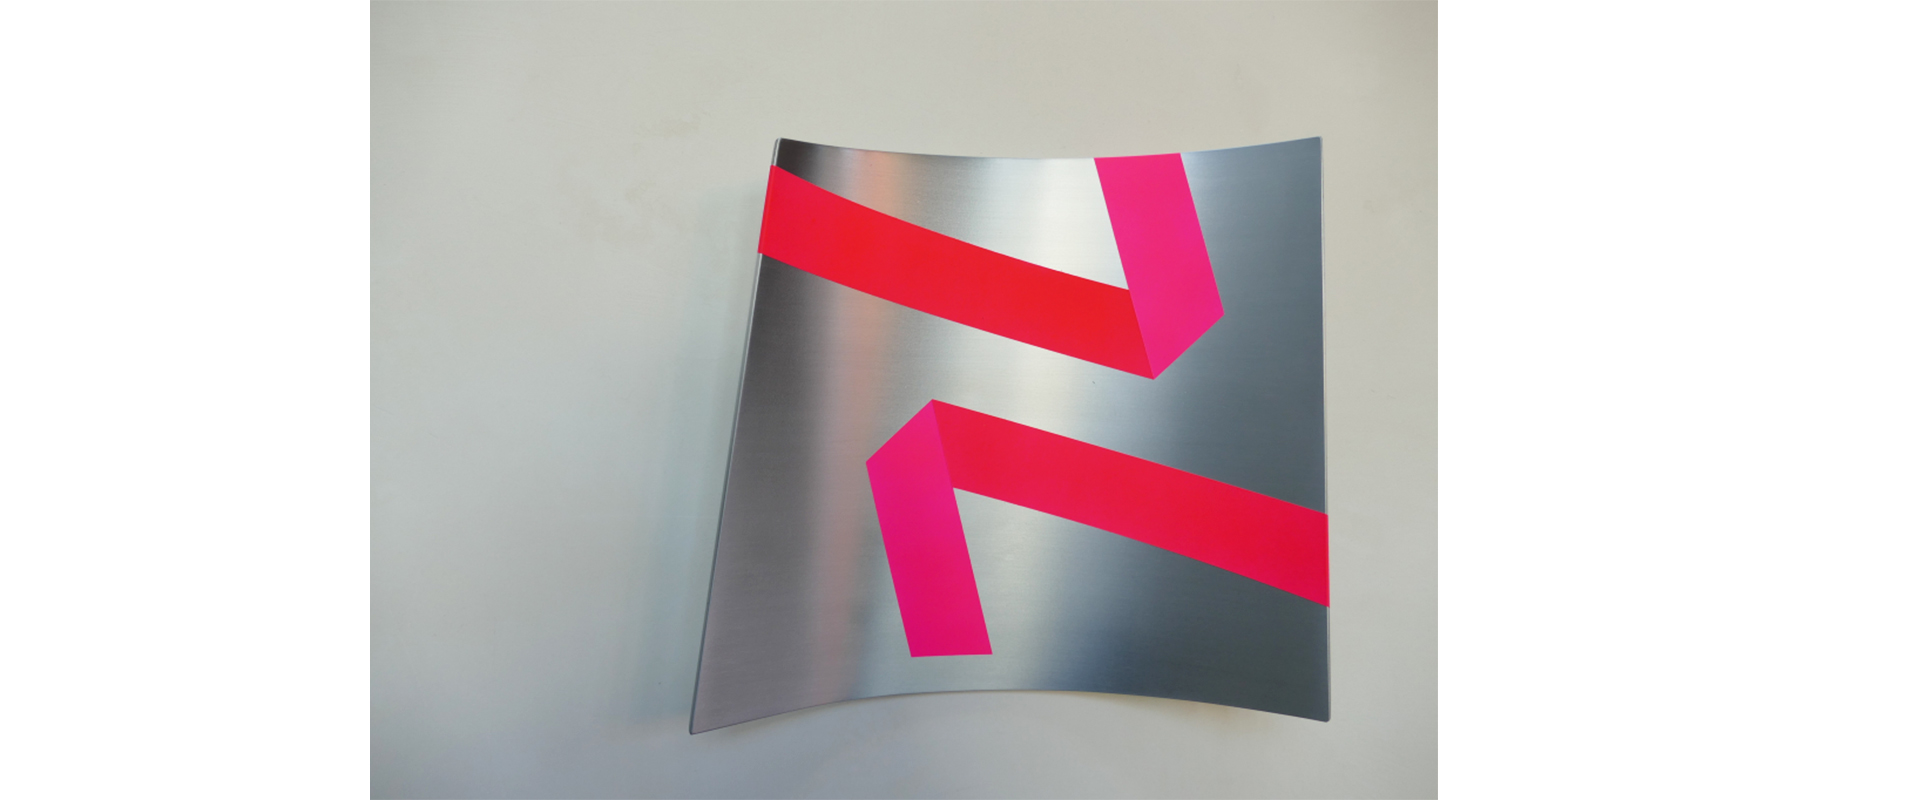 Raumzeichen #486 – 2021, Lack auf Aluminium, 27 x 30 x 7 cm